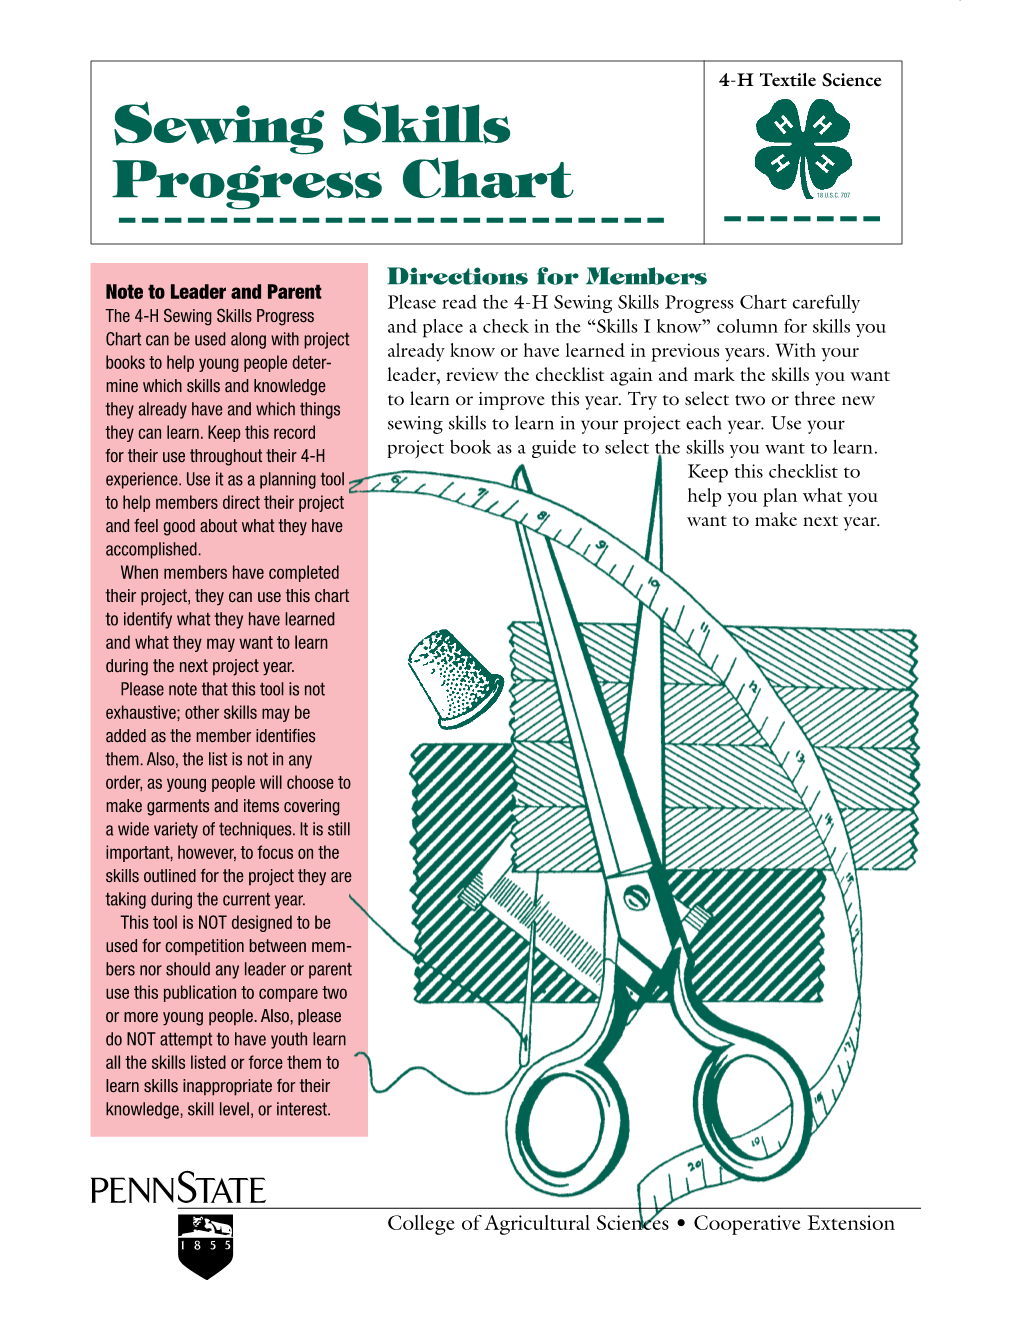 Sewing Skills Progress Chart